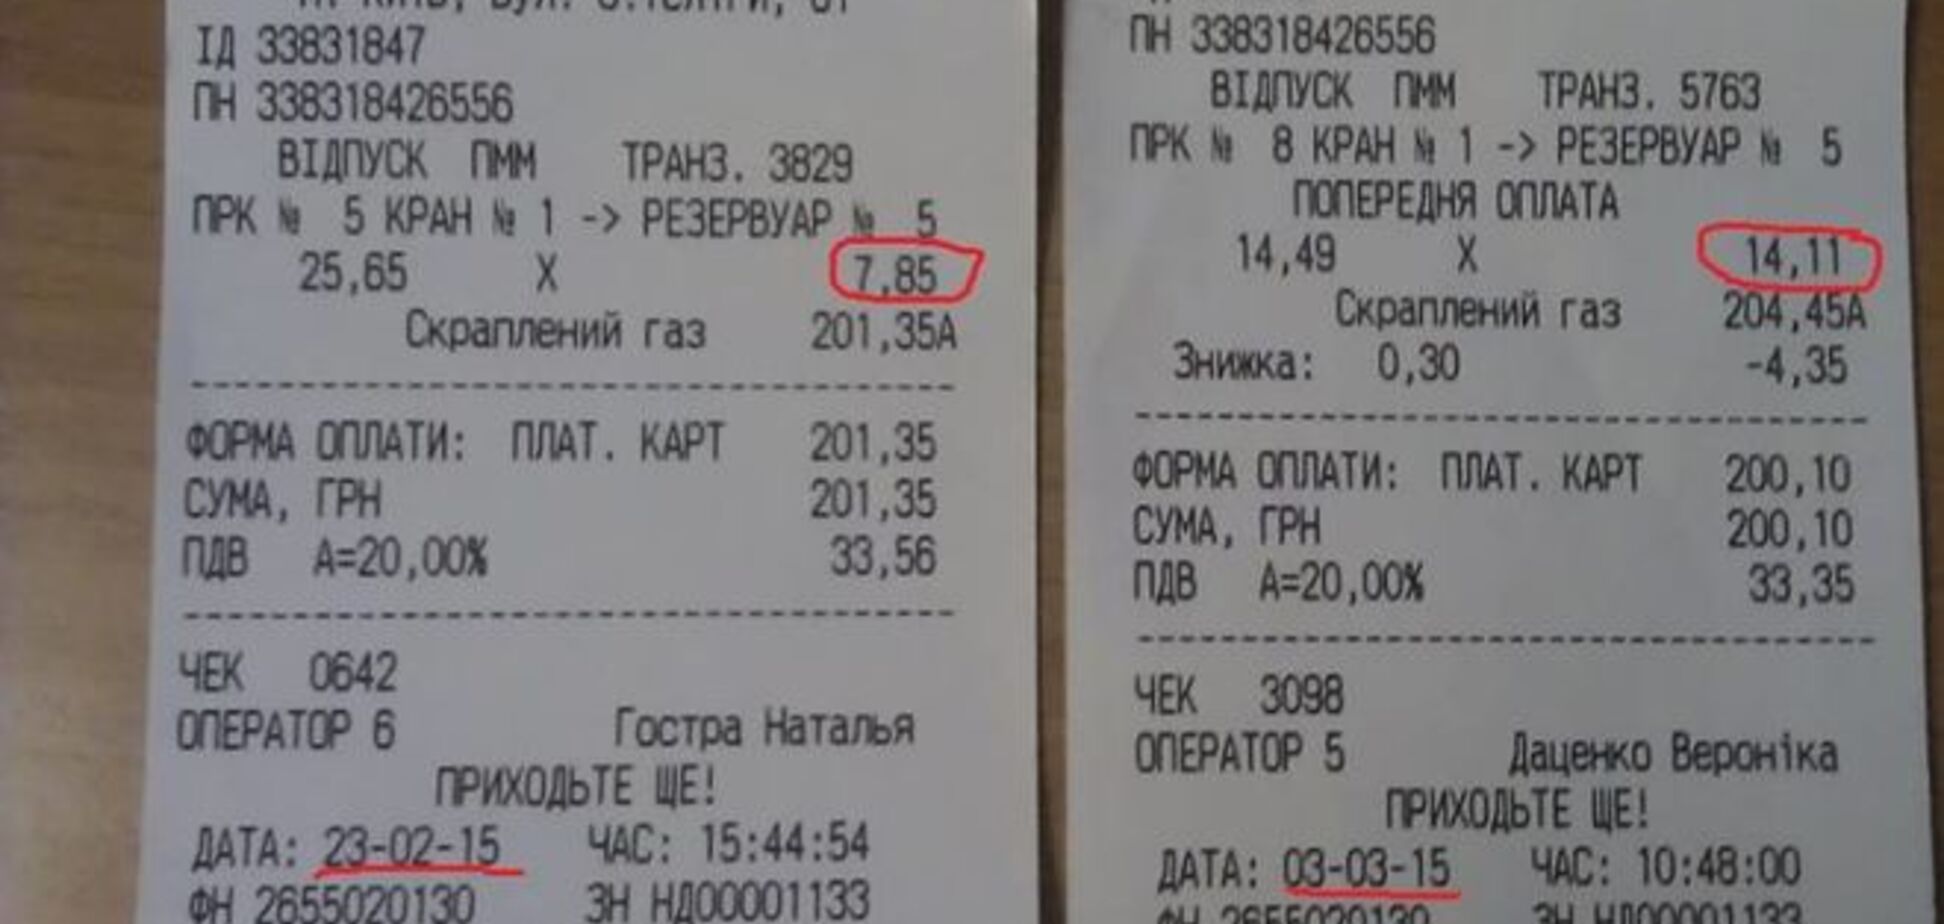 Автозаправки Киева взвинтили цены на газ: фотофакт